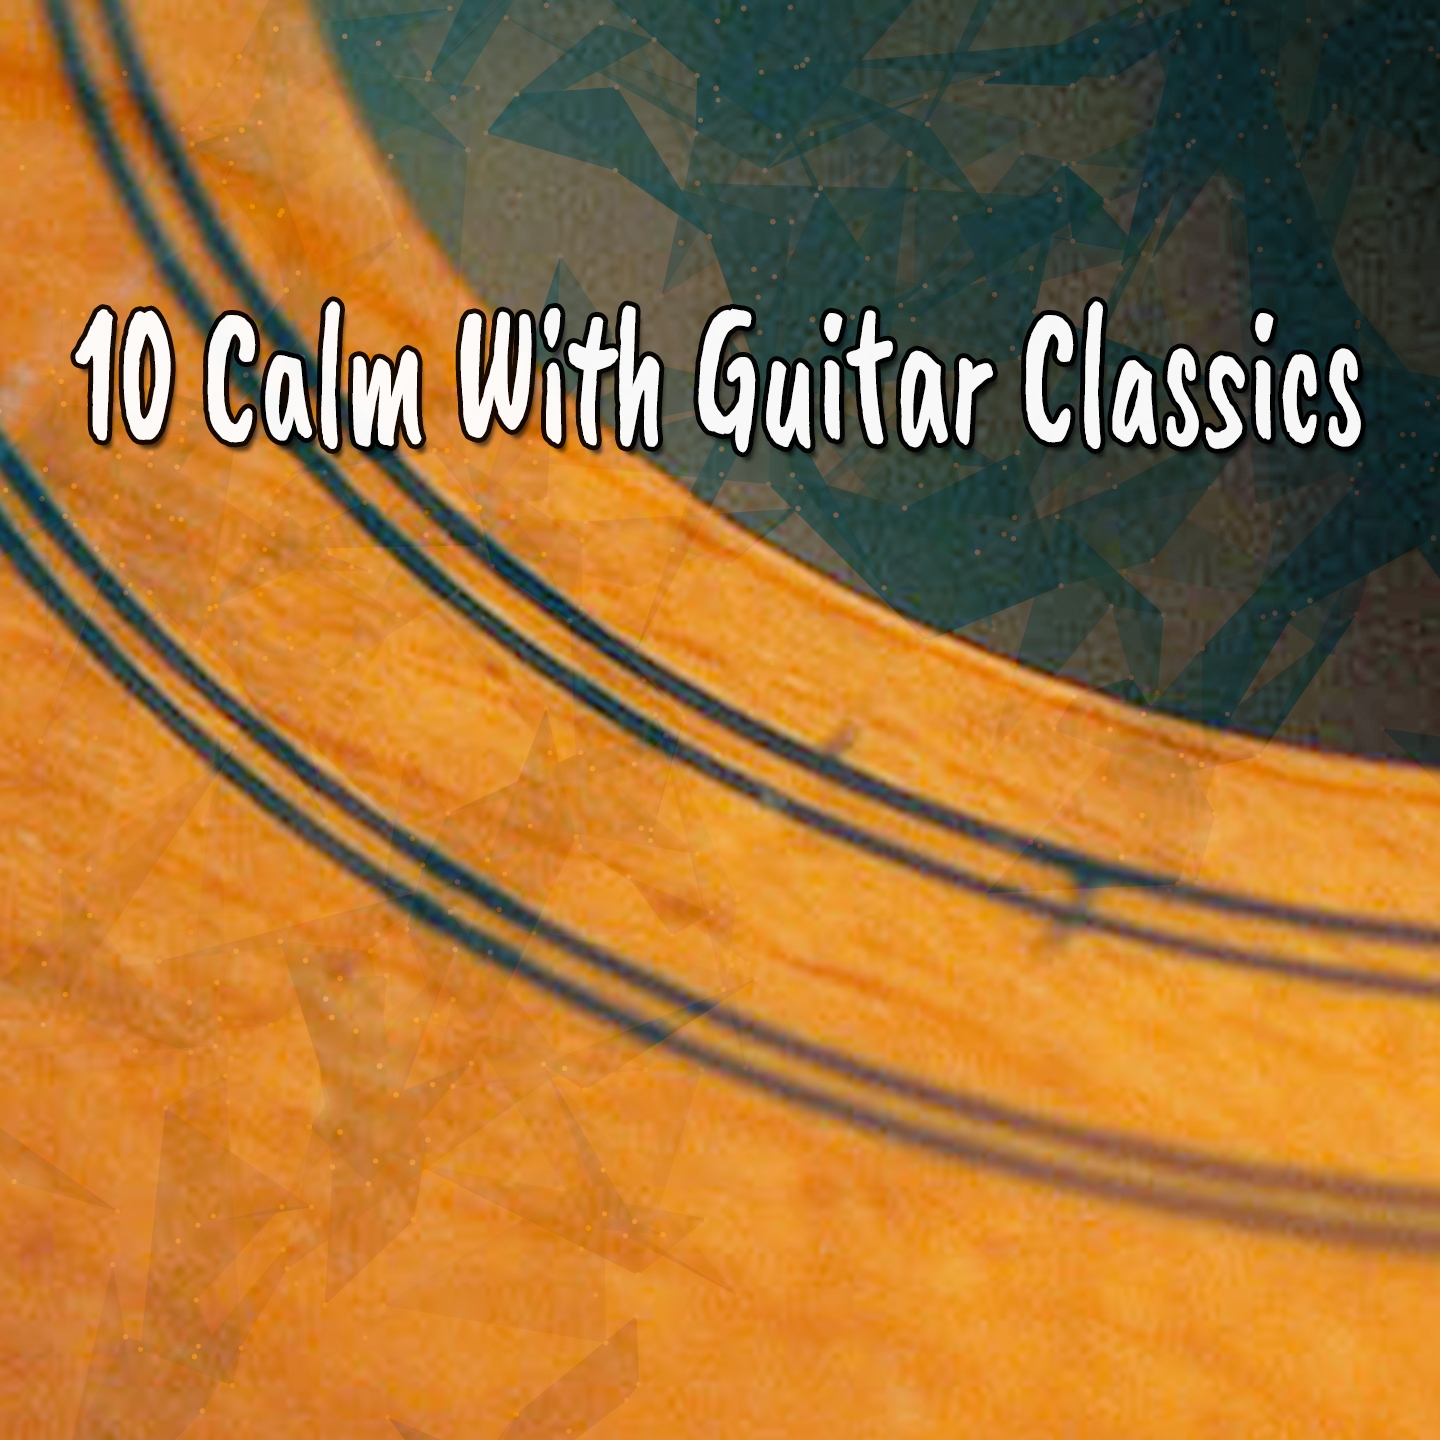 10 Calm With Guitar Classics